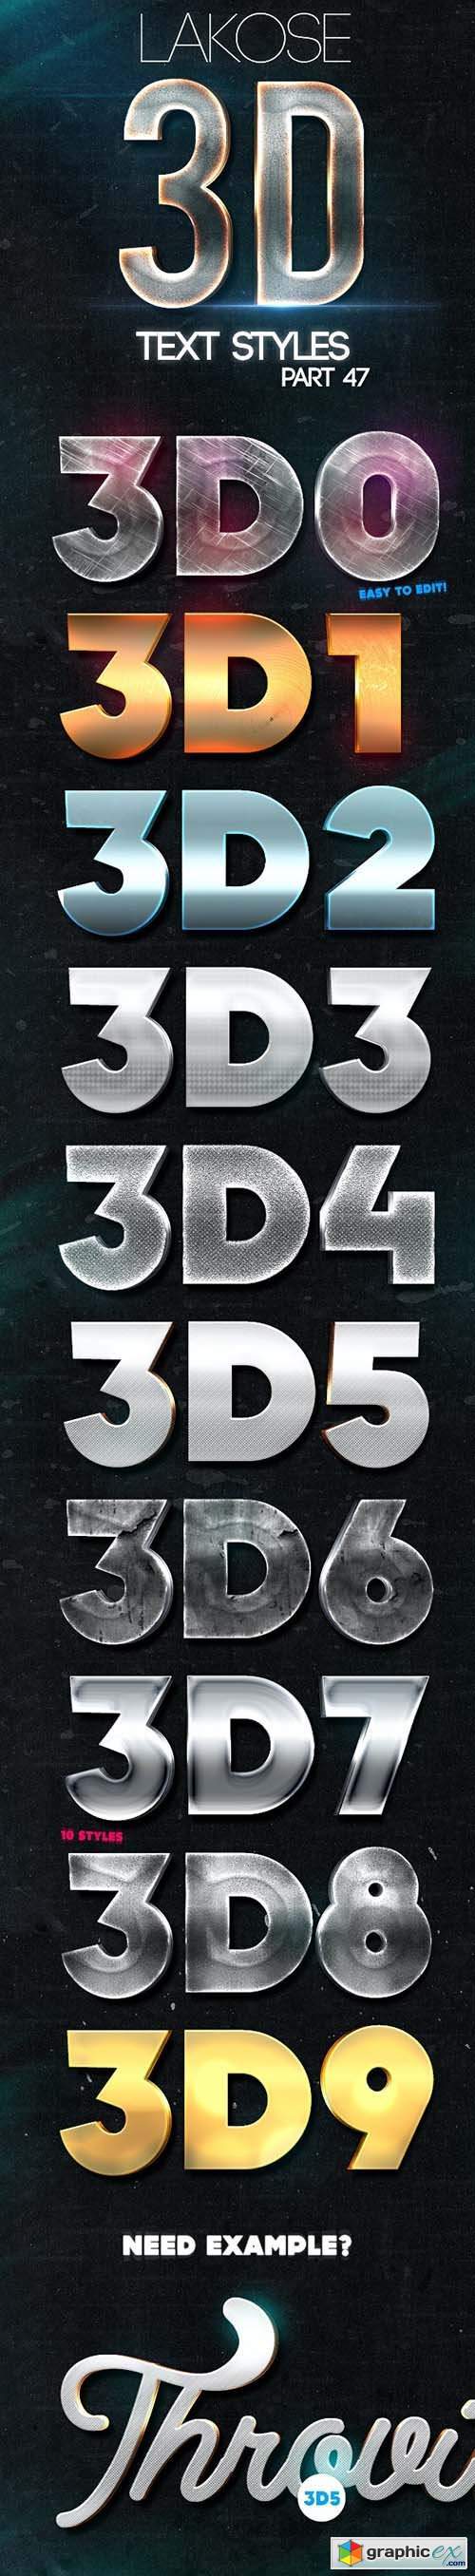 Lakose 3D Text Styles Part 47